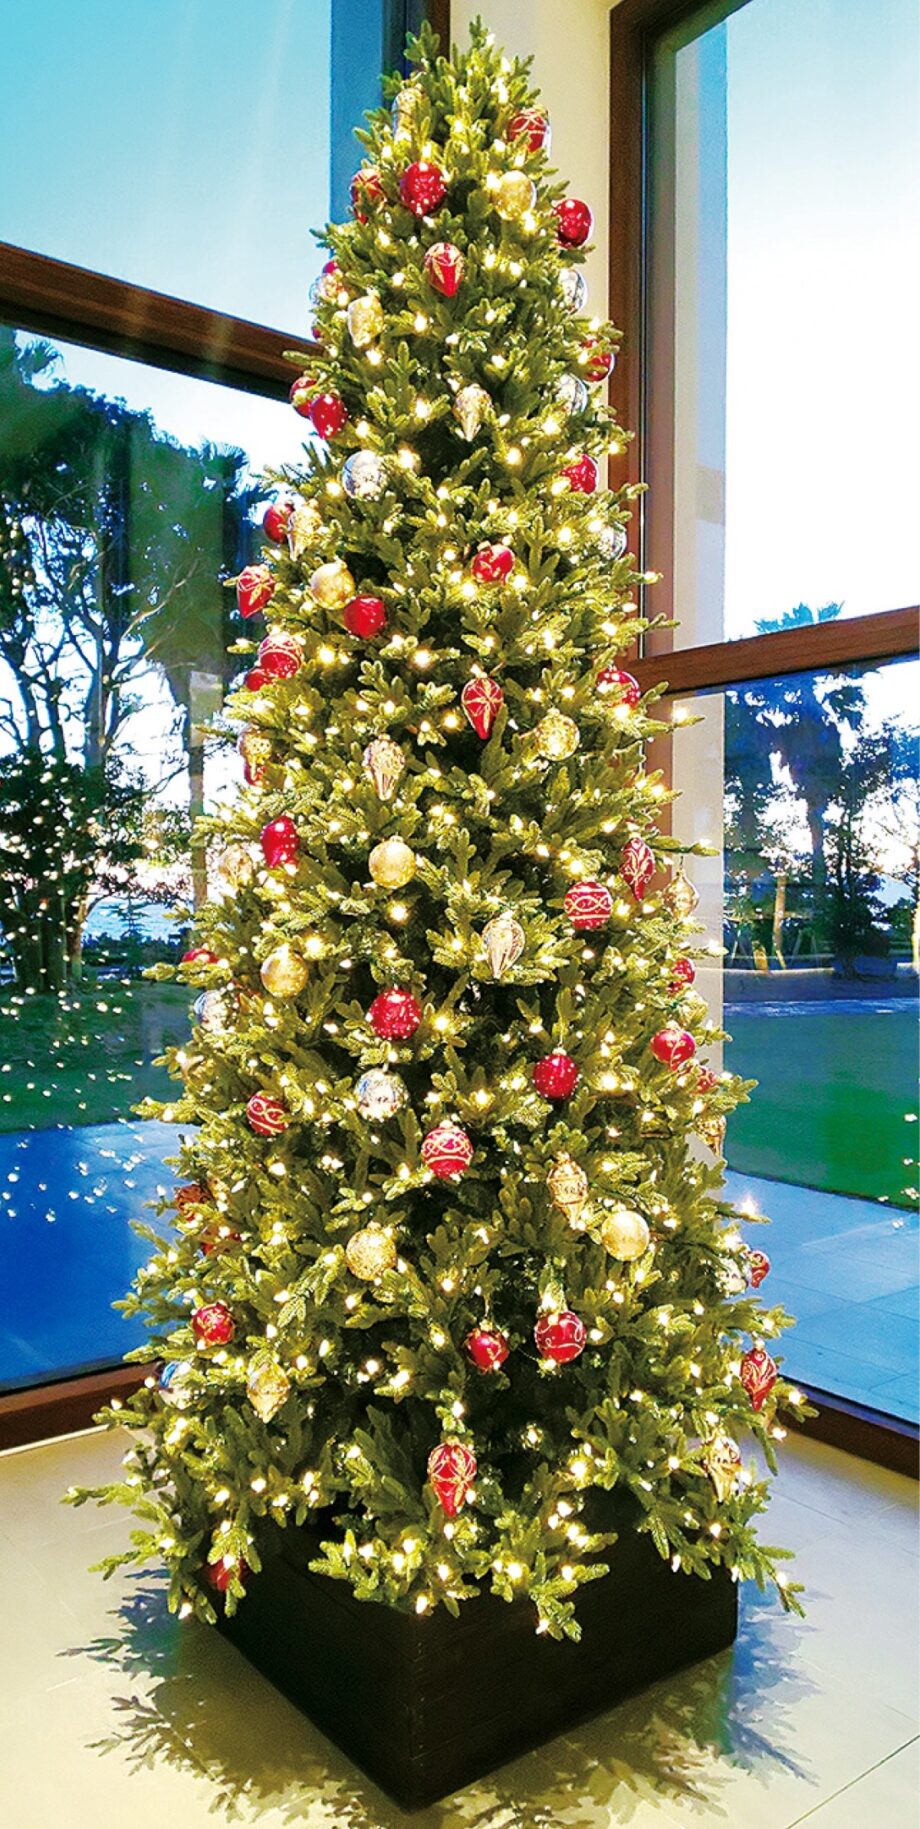 2021年も大磯プリンスホテルのクリスマスツリーが華やかにきらめく